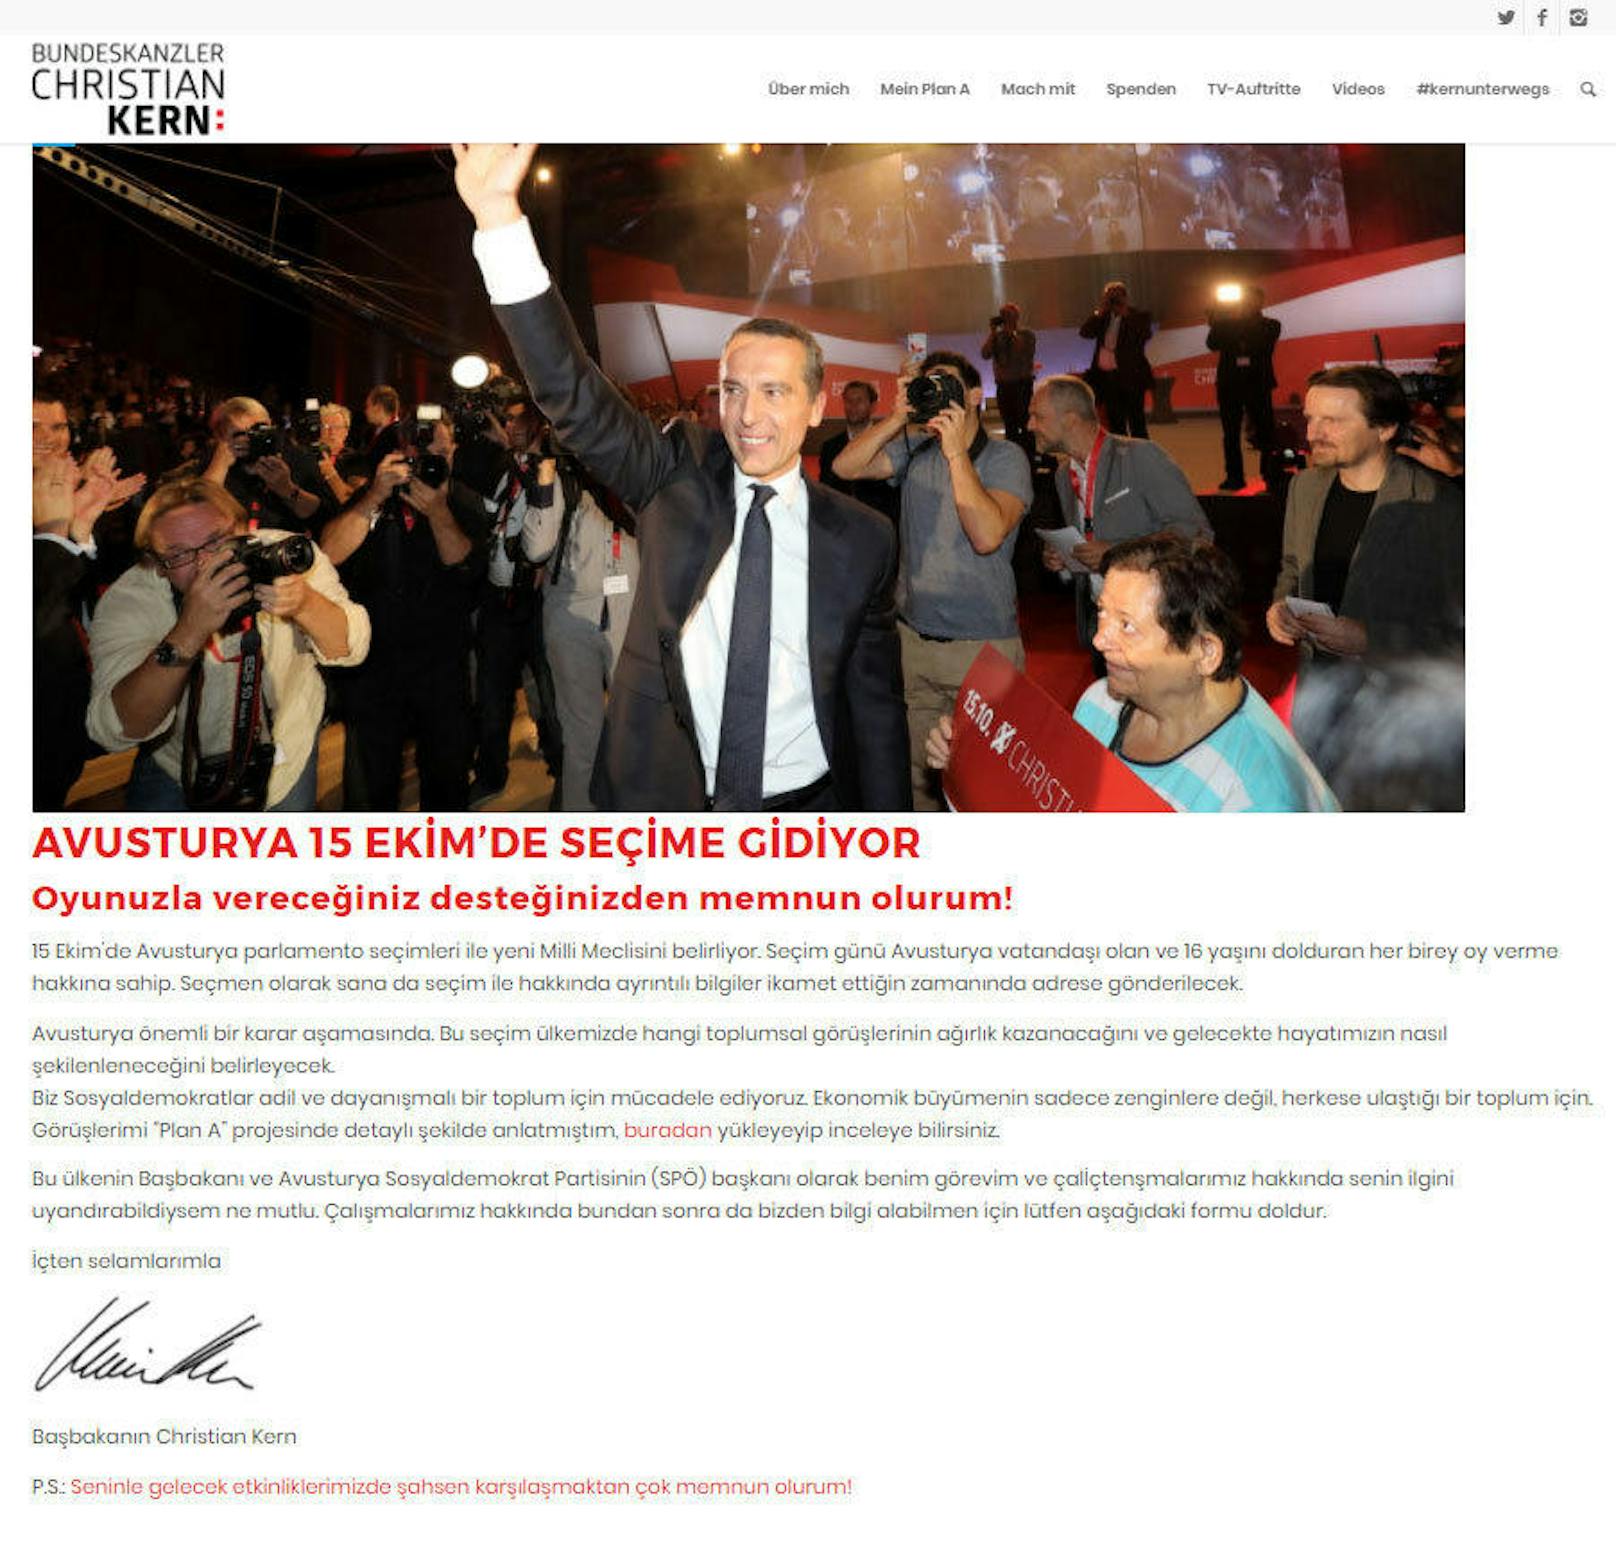 Die SPÖ wirbt auf der Webseite des Bundeskanzlers nun auf Türkisch ...